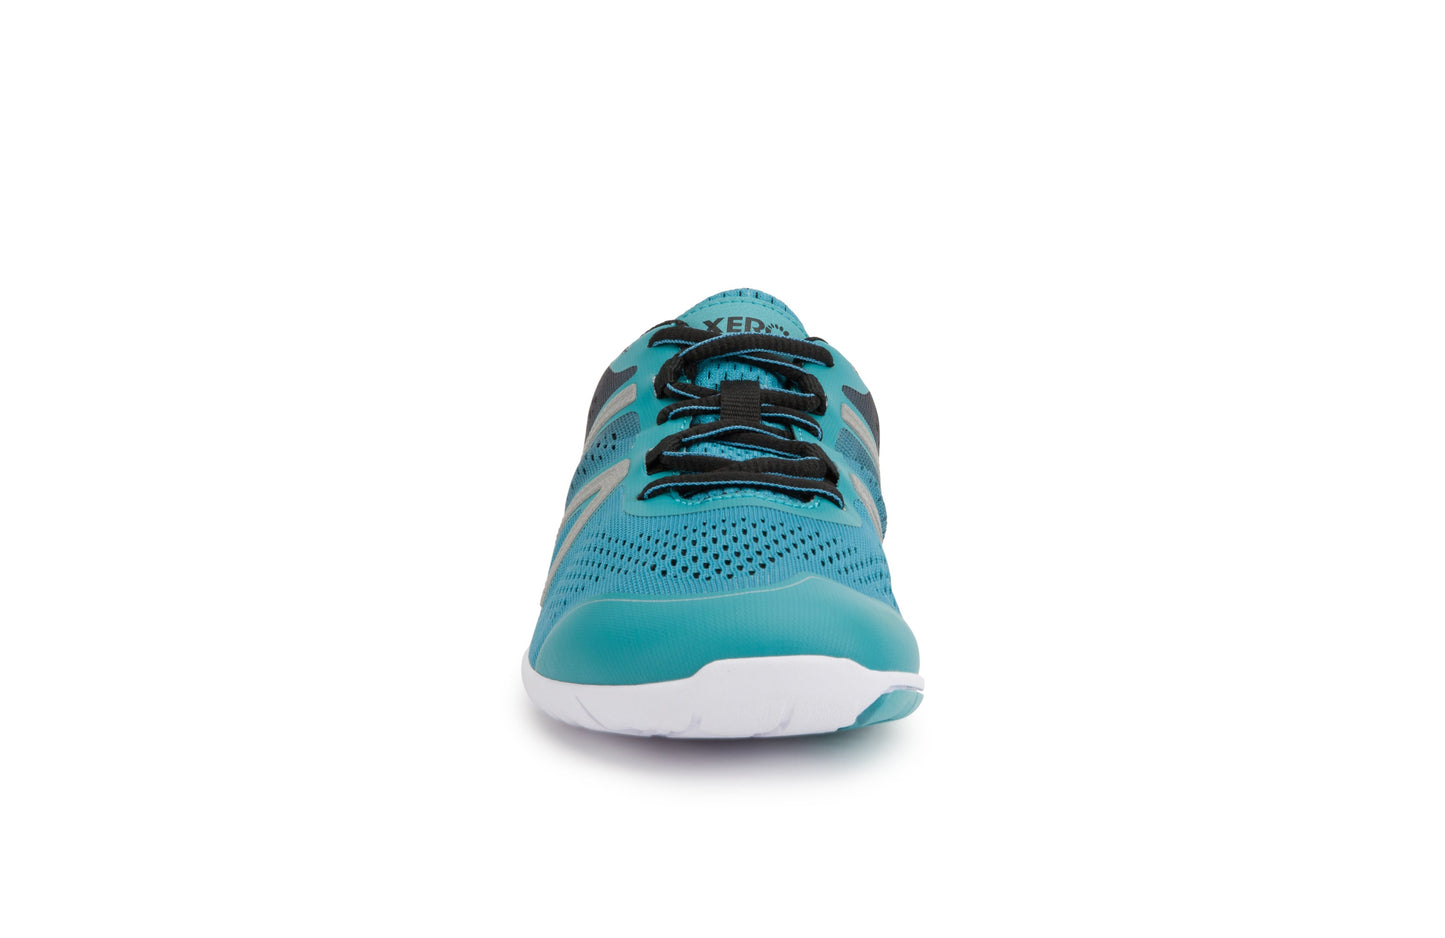 Xero Shoes HFS Womens barfods træningssko/løbesko til kvinder i farven porcelain blue, forfra